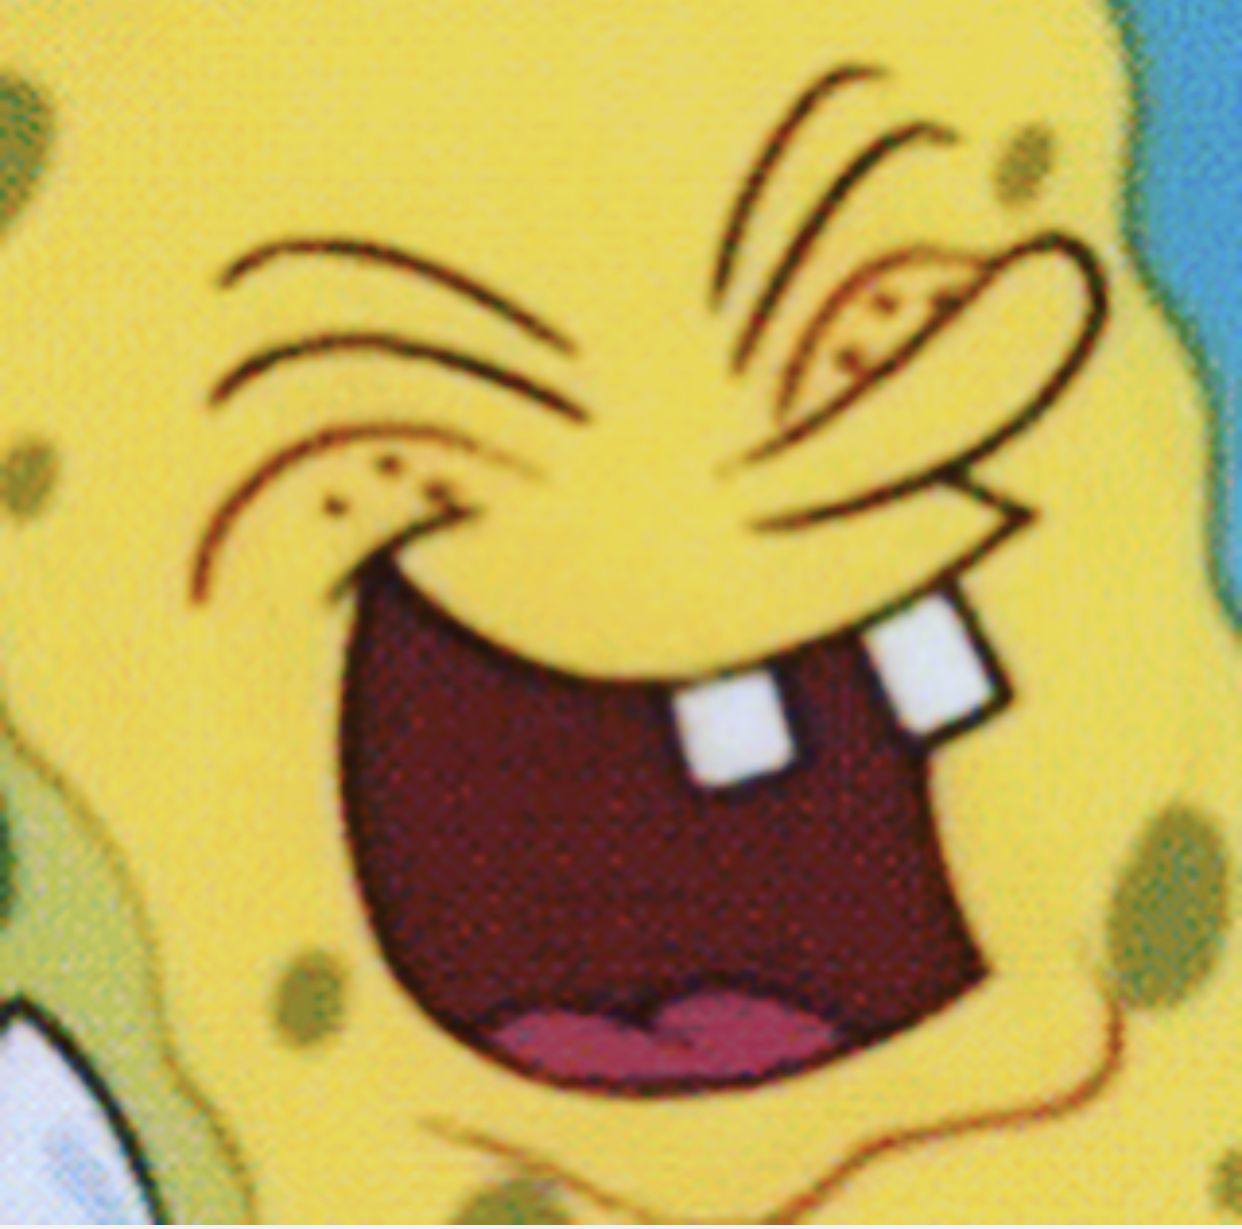 Spongebob Laughter Meme Generator Imgflip